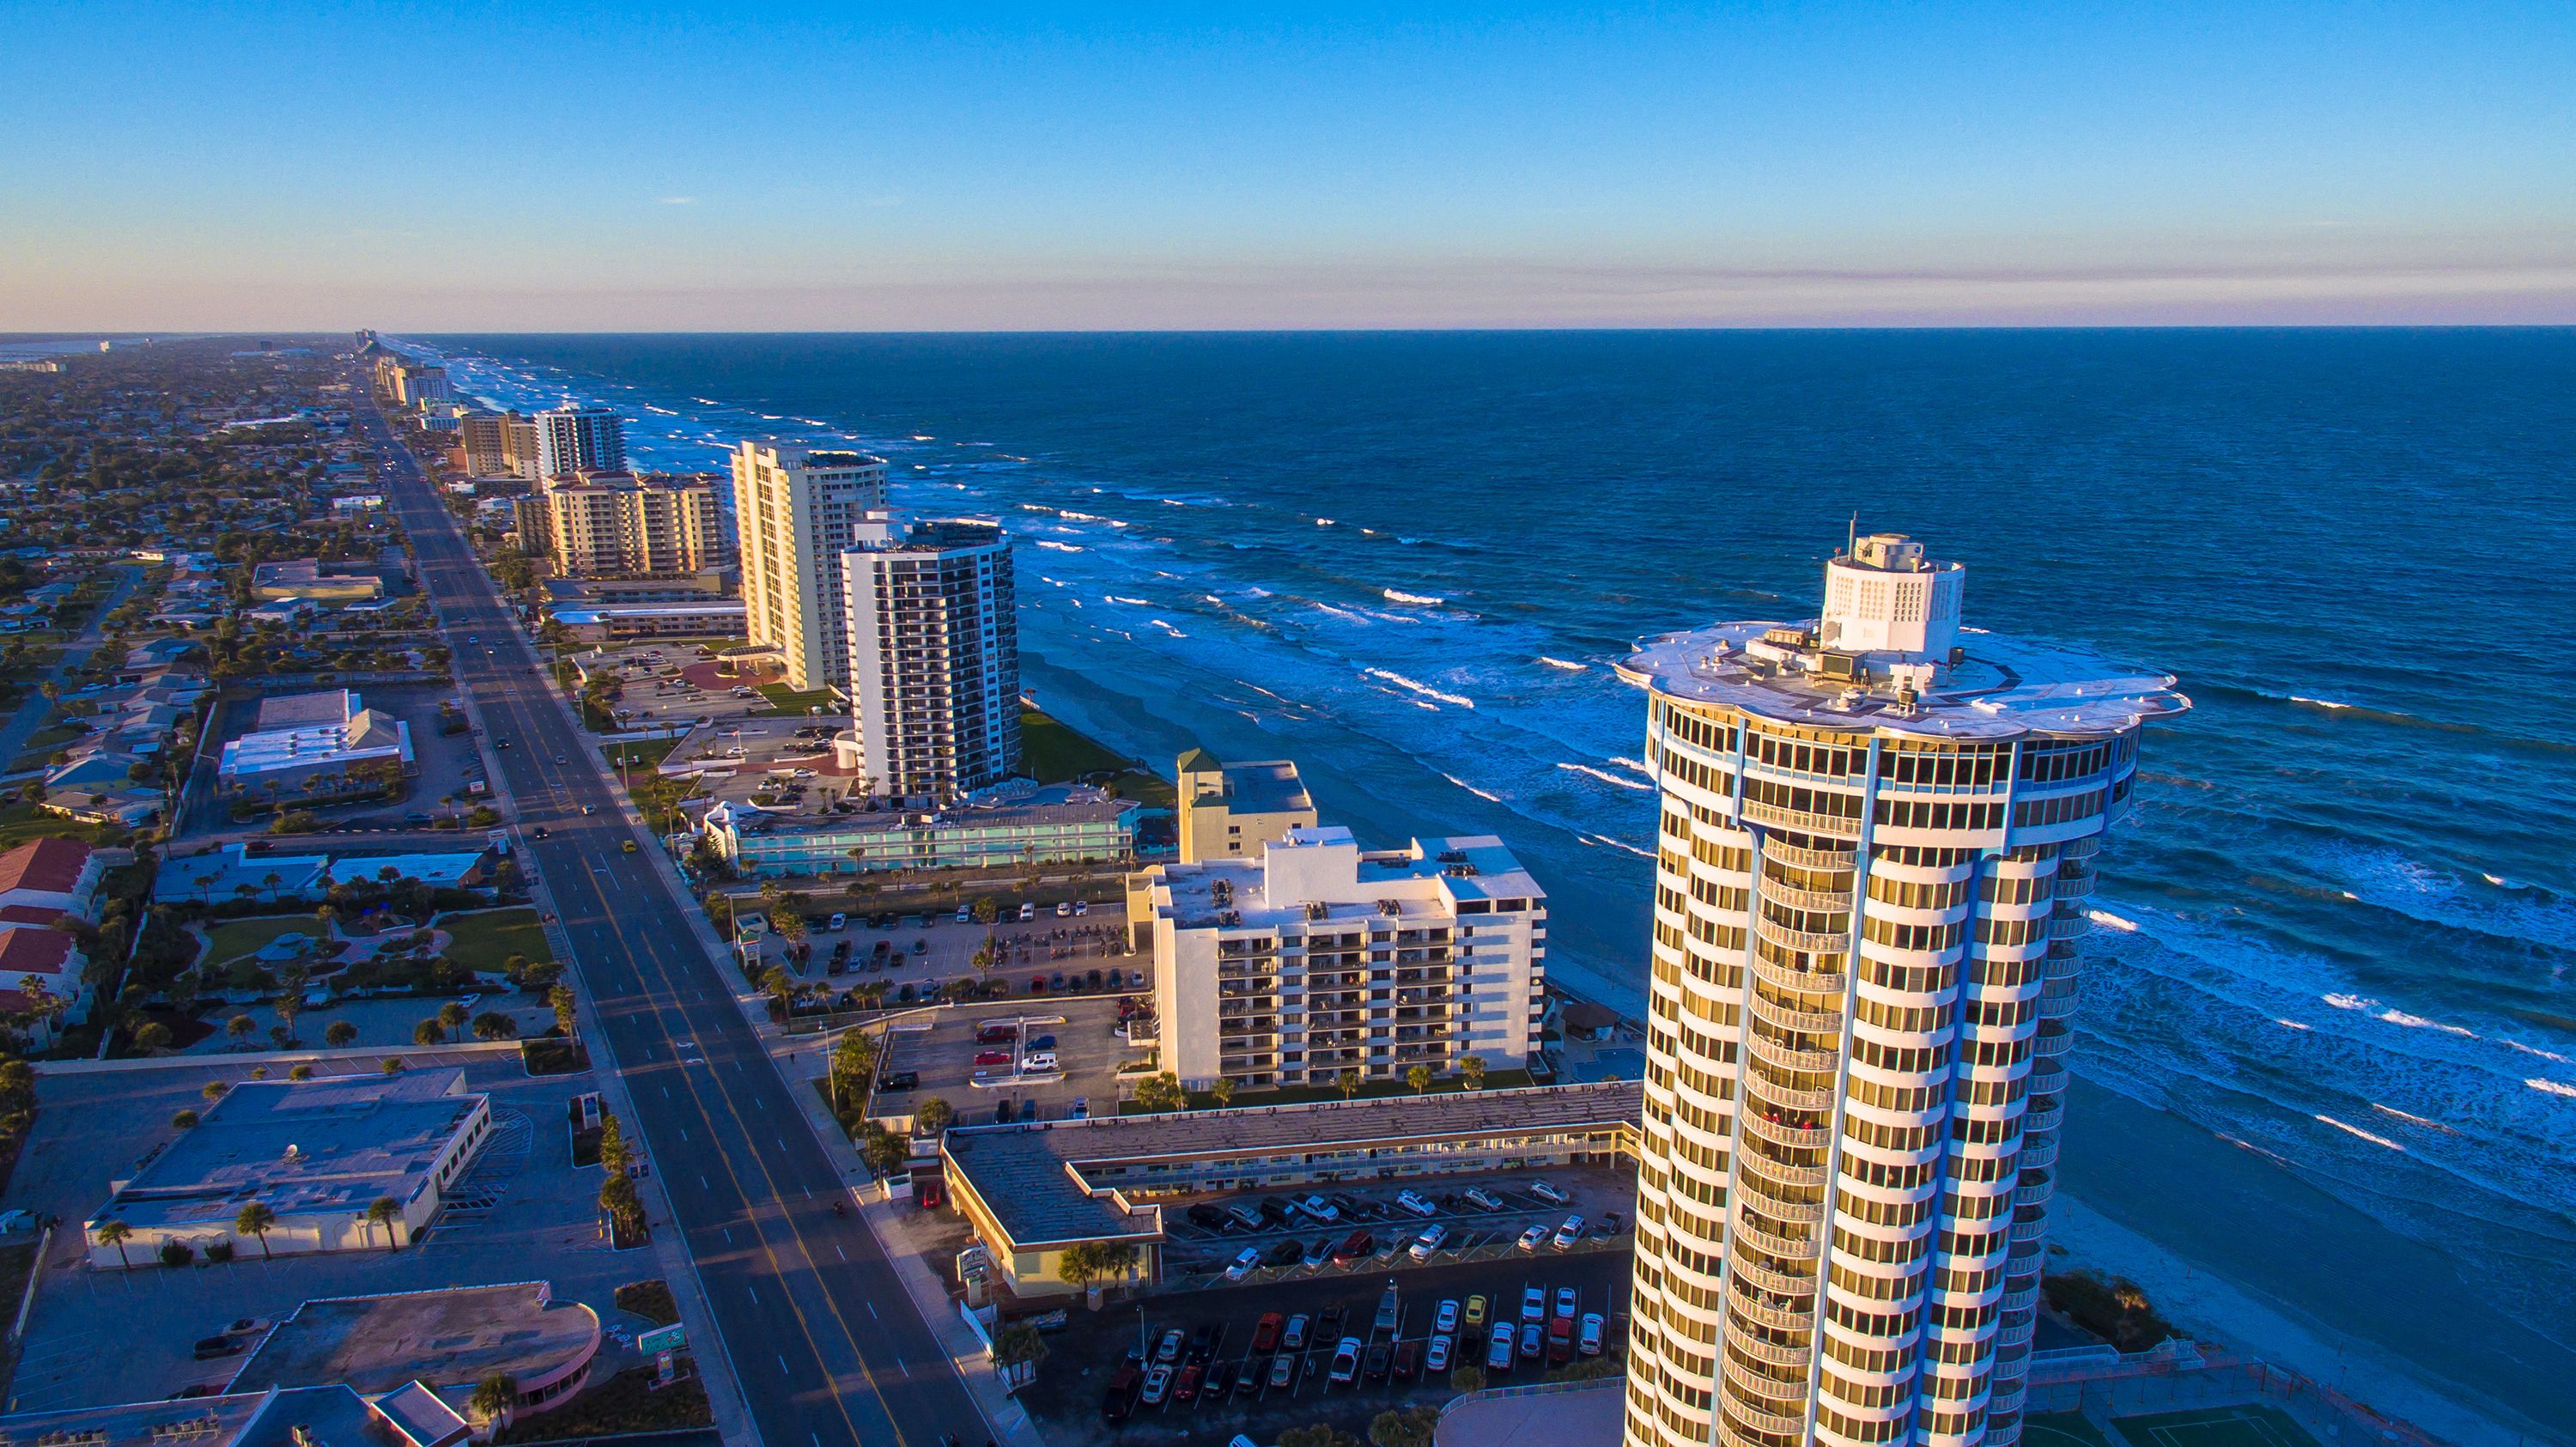 Strip of Hotels on Daytona Beach